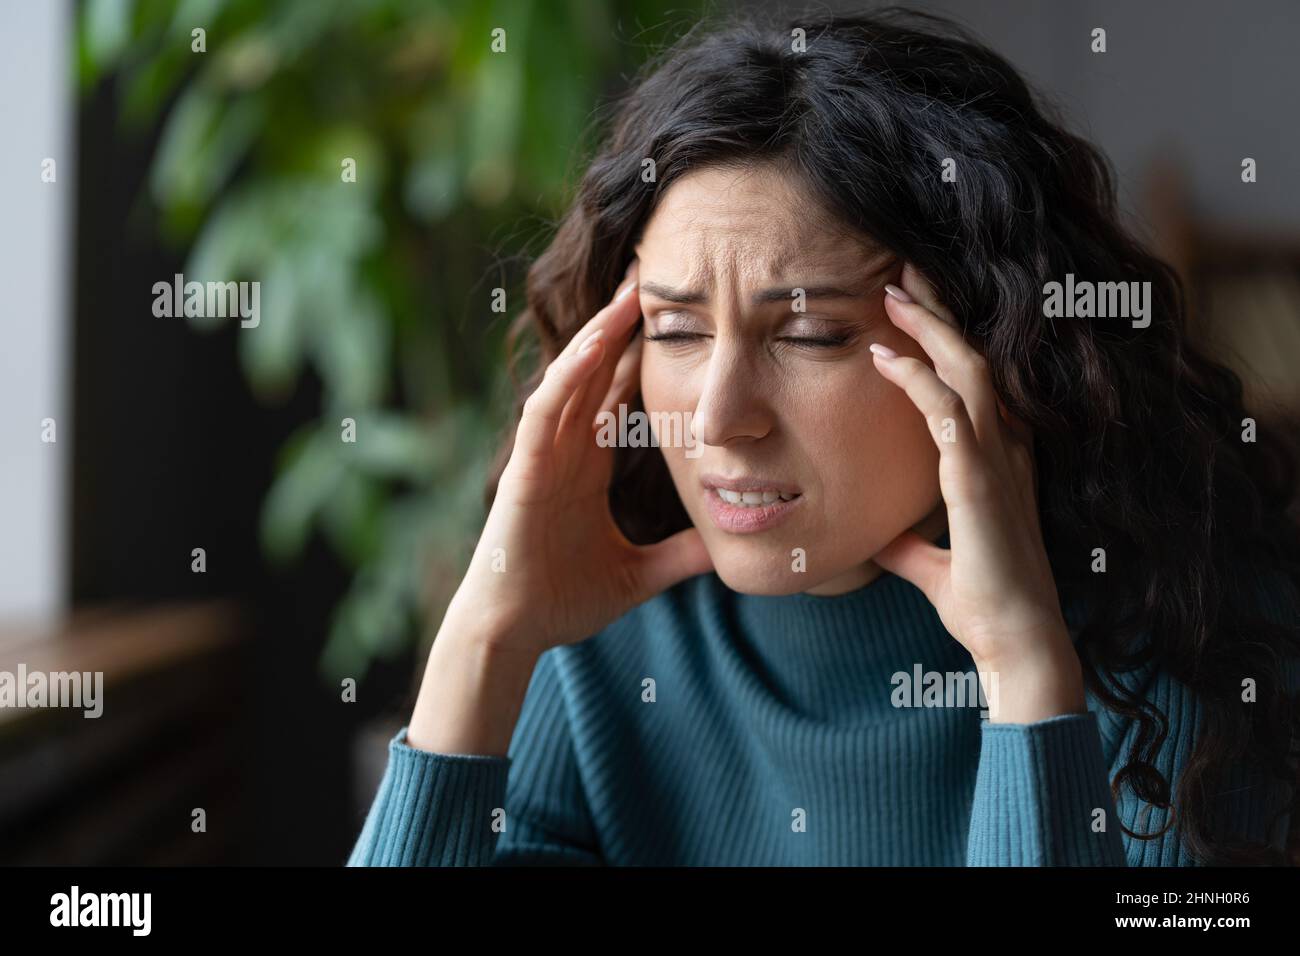 Ermüdete überarbeitete junge Frau, die an Migräne litt und sich um persönliche Probleme sorgte Stockfoto